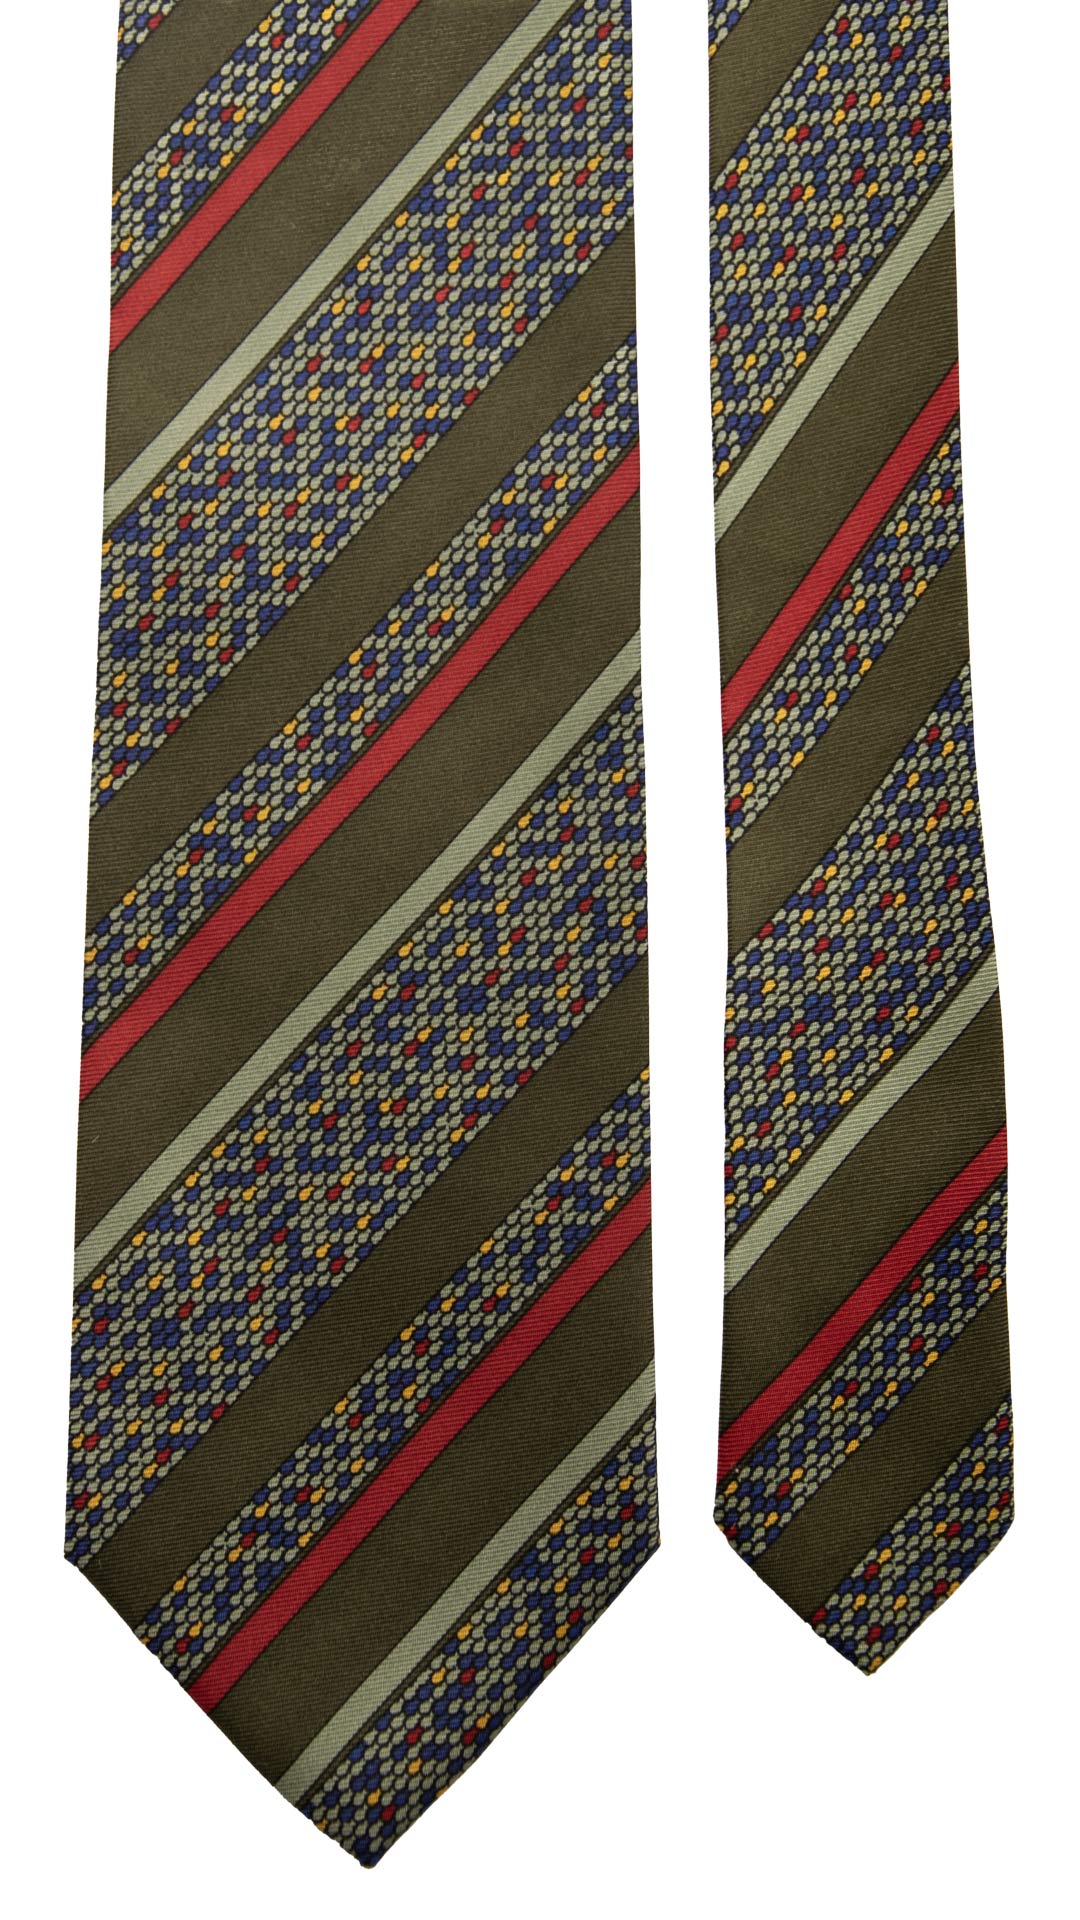 Cravatta Vintage Regimental in Twill di Seta Verde A Righe Multicolor CV794 Pala